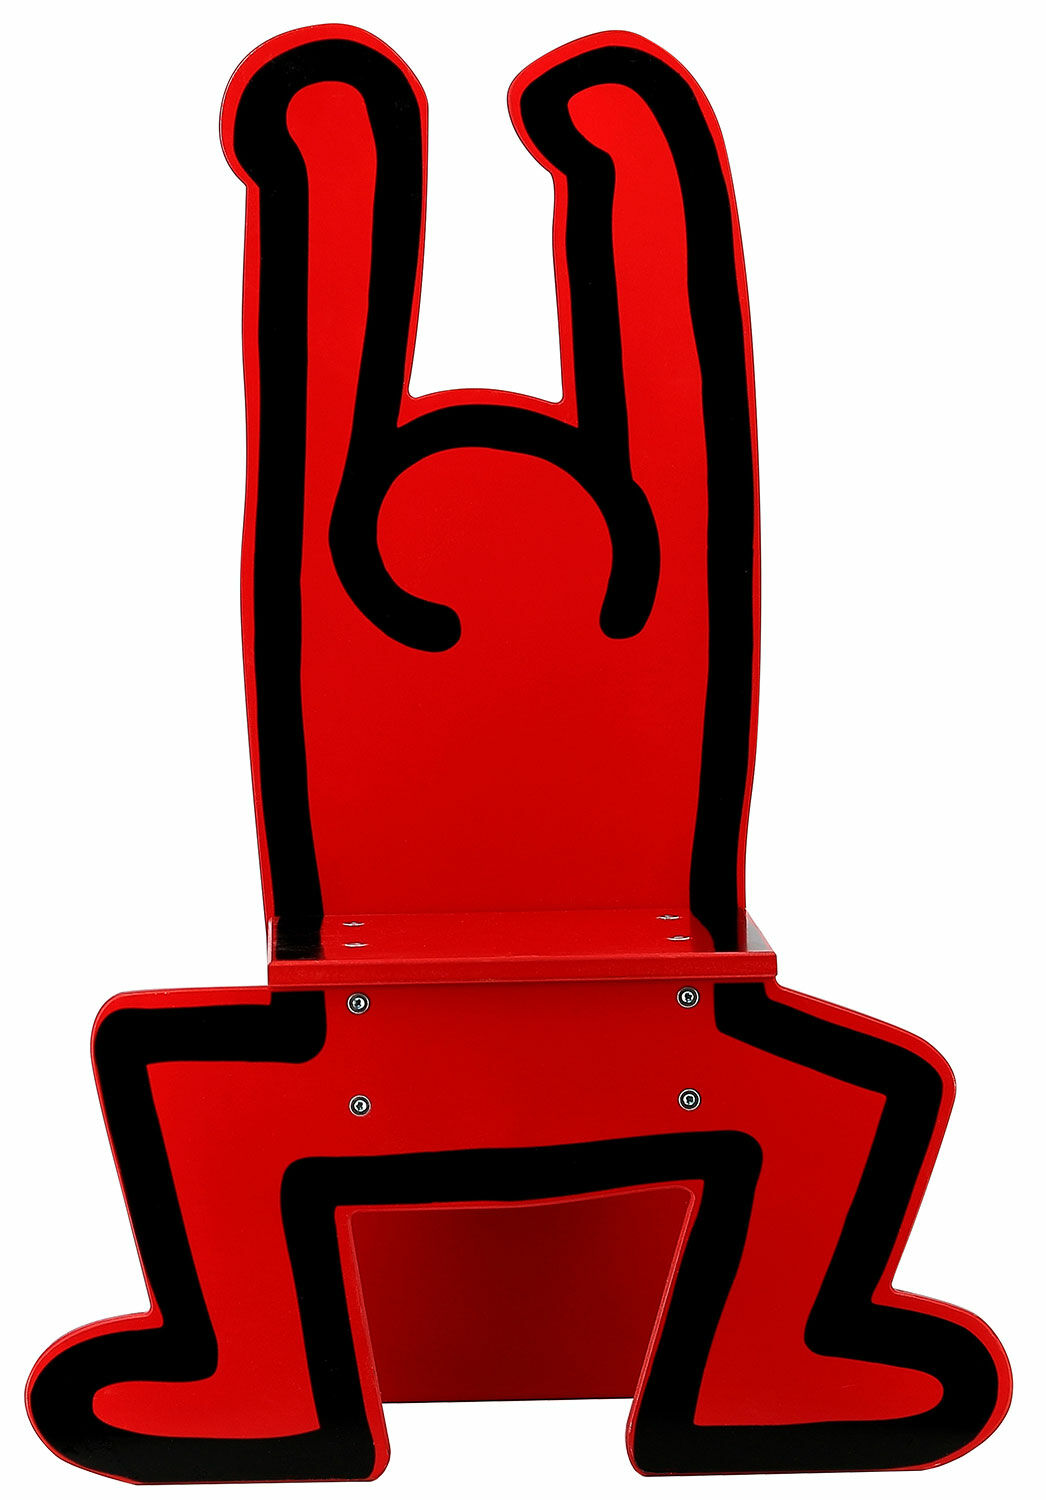 Kinderstoel "Keith Haring", rode versie